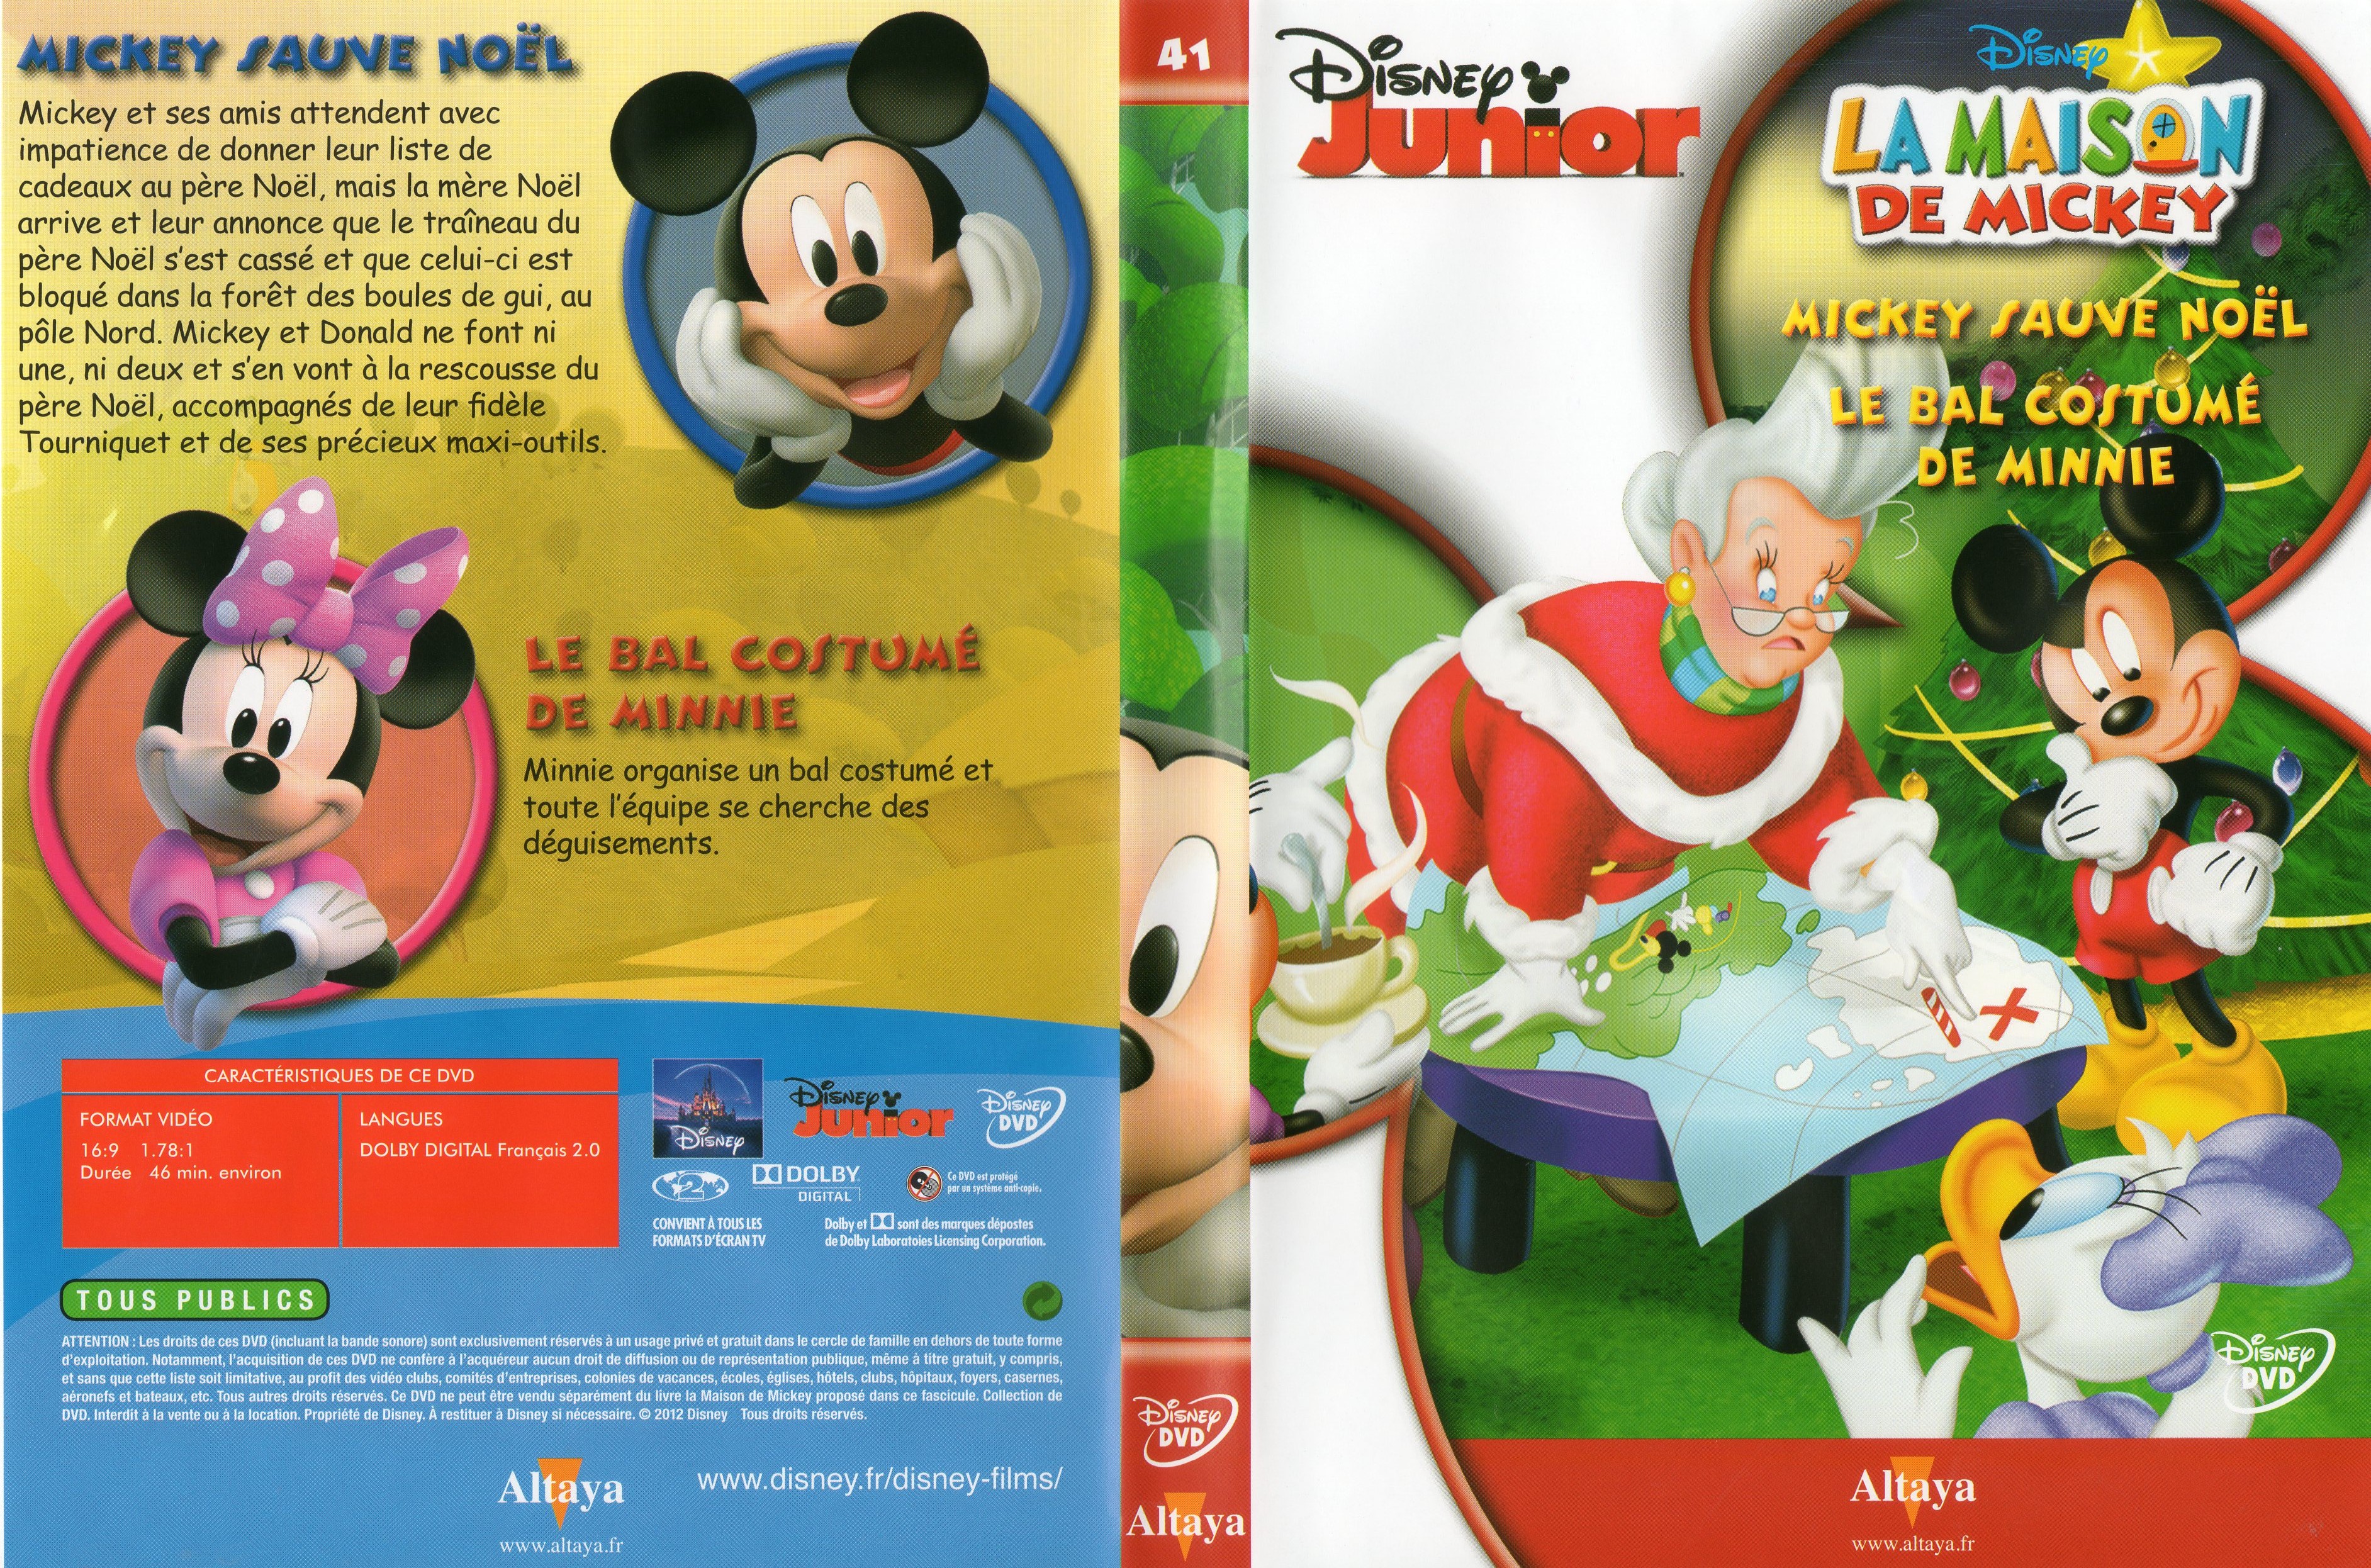 Jaquette DVD La maison de Mickey DVD 41